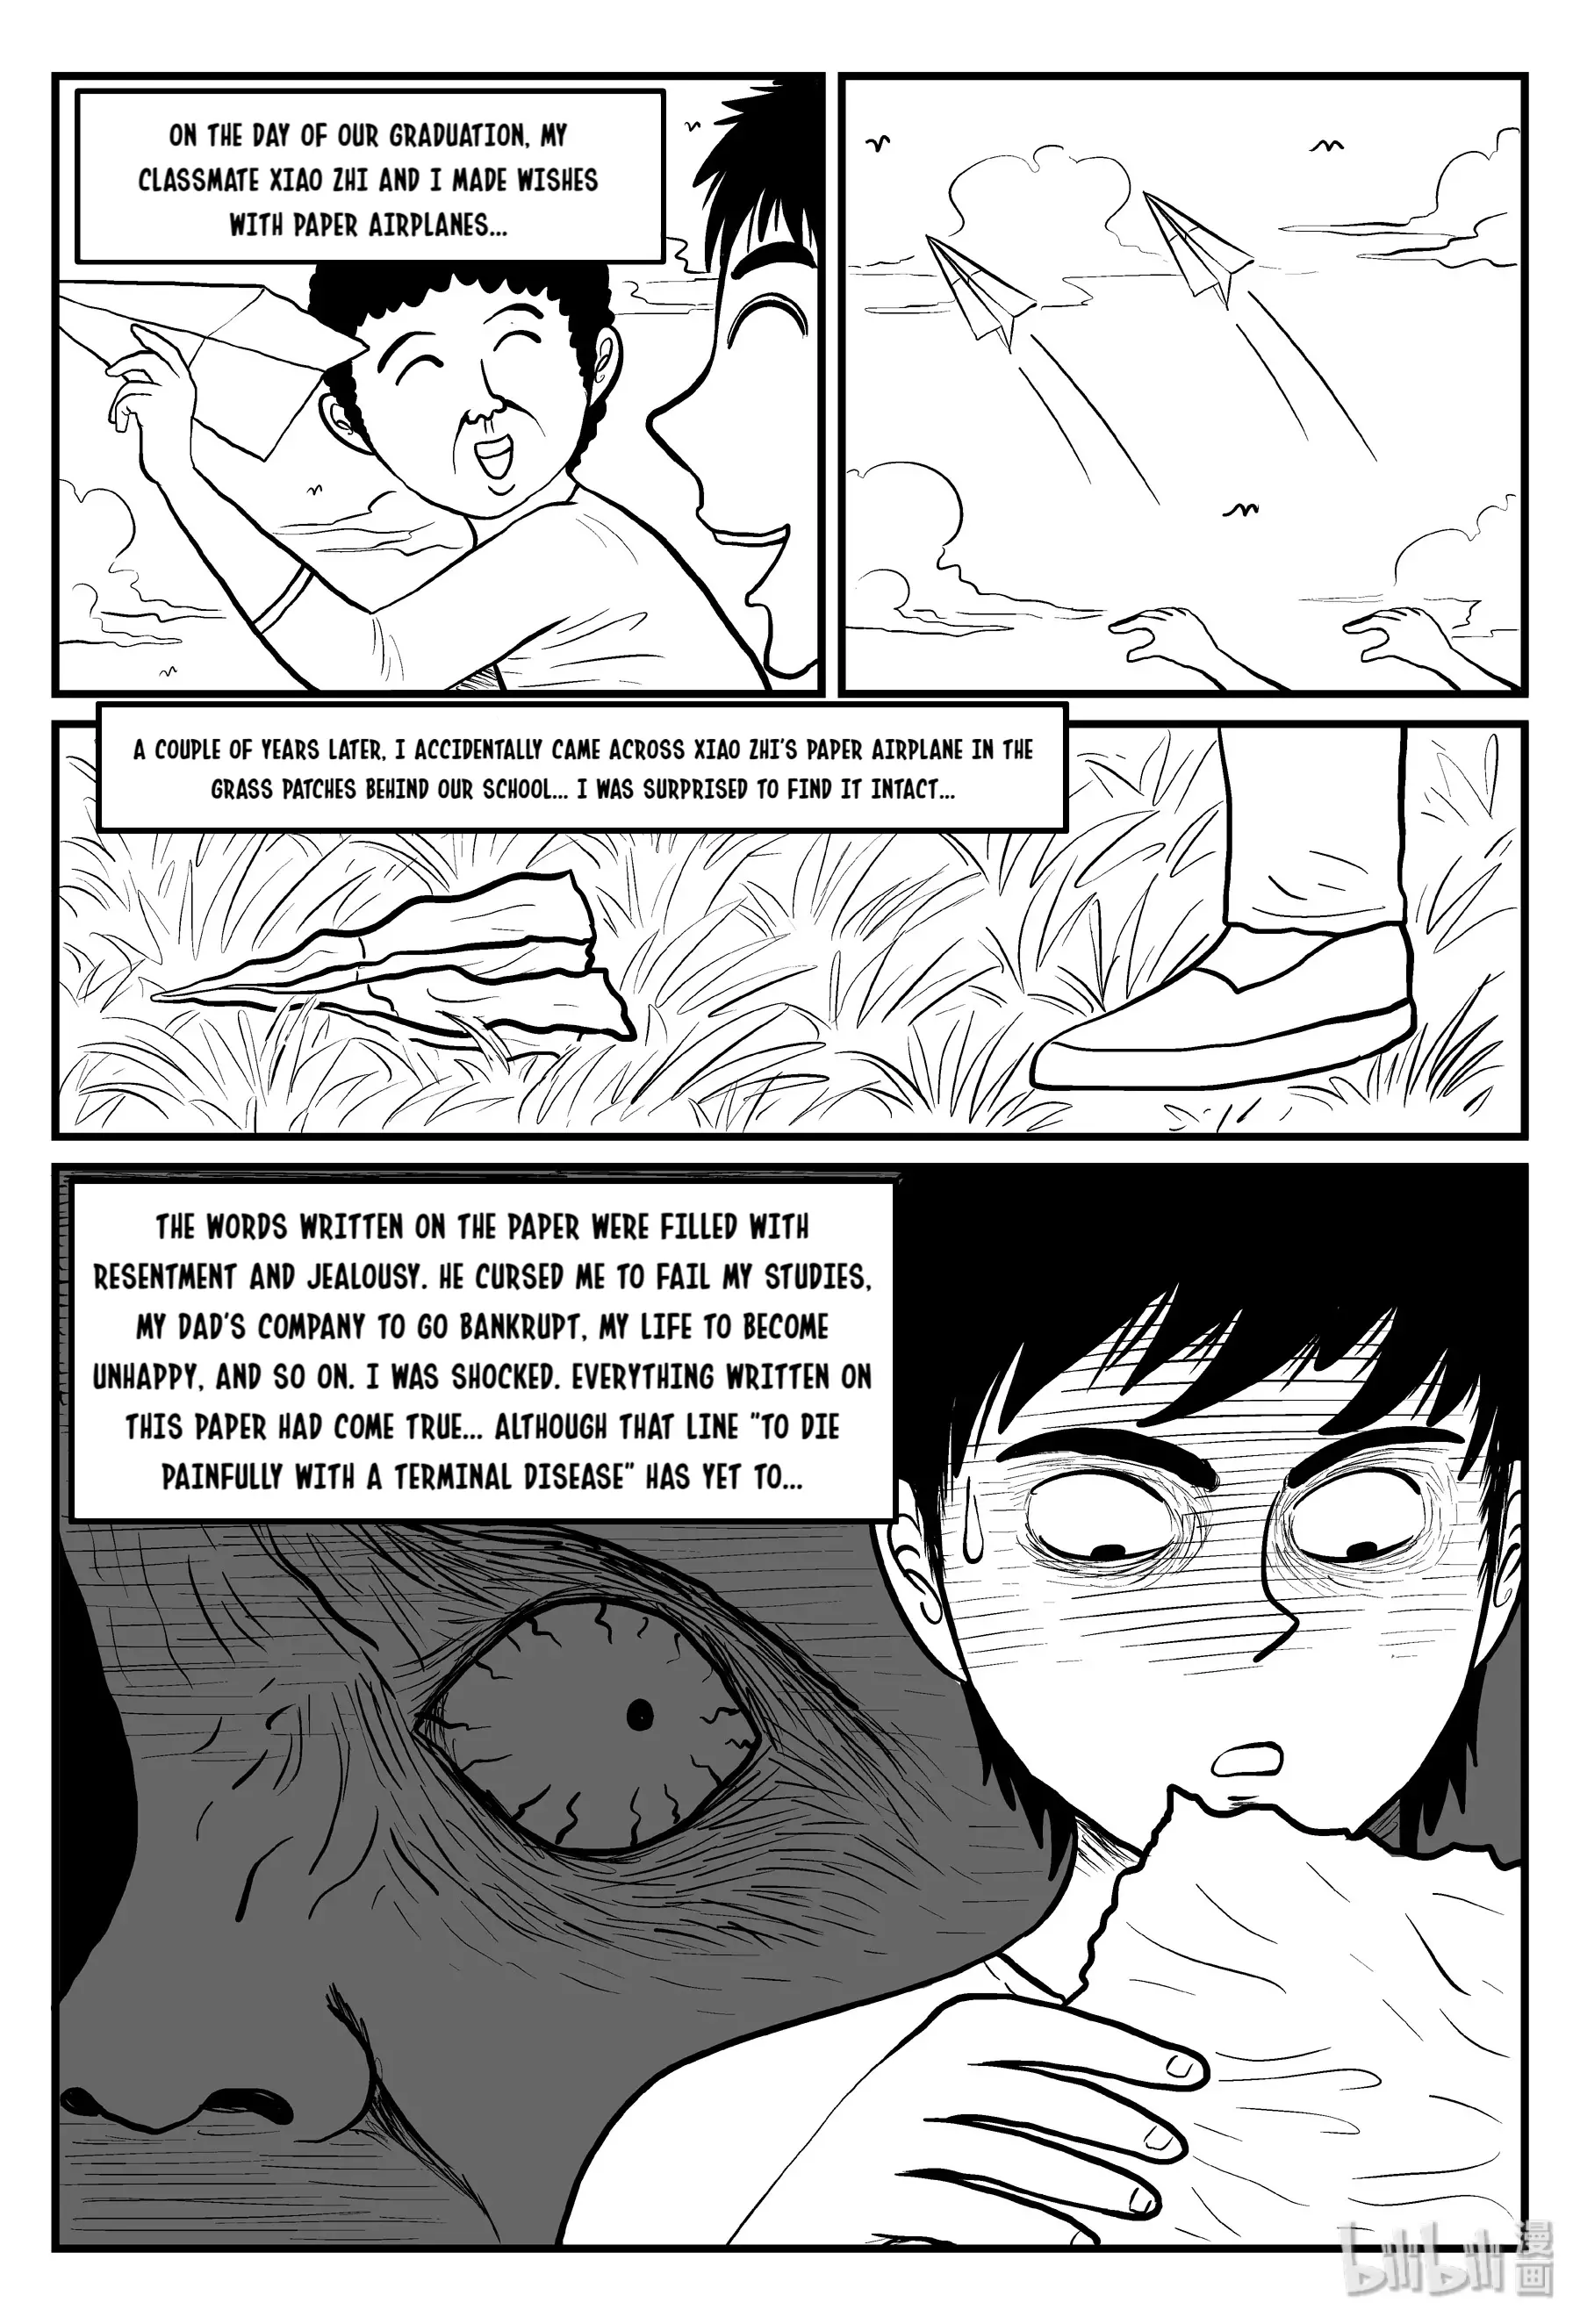 Strange Tales Of Xiao Zhi - 76 page 8-35e4ae59